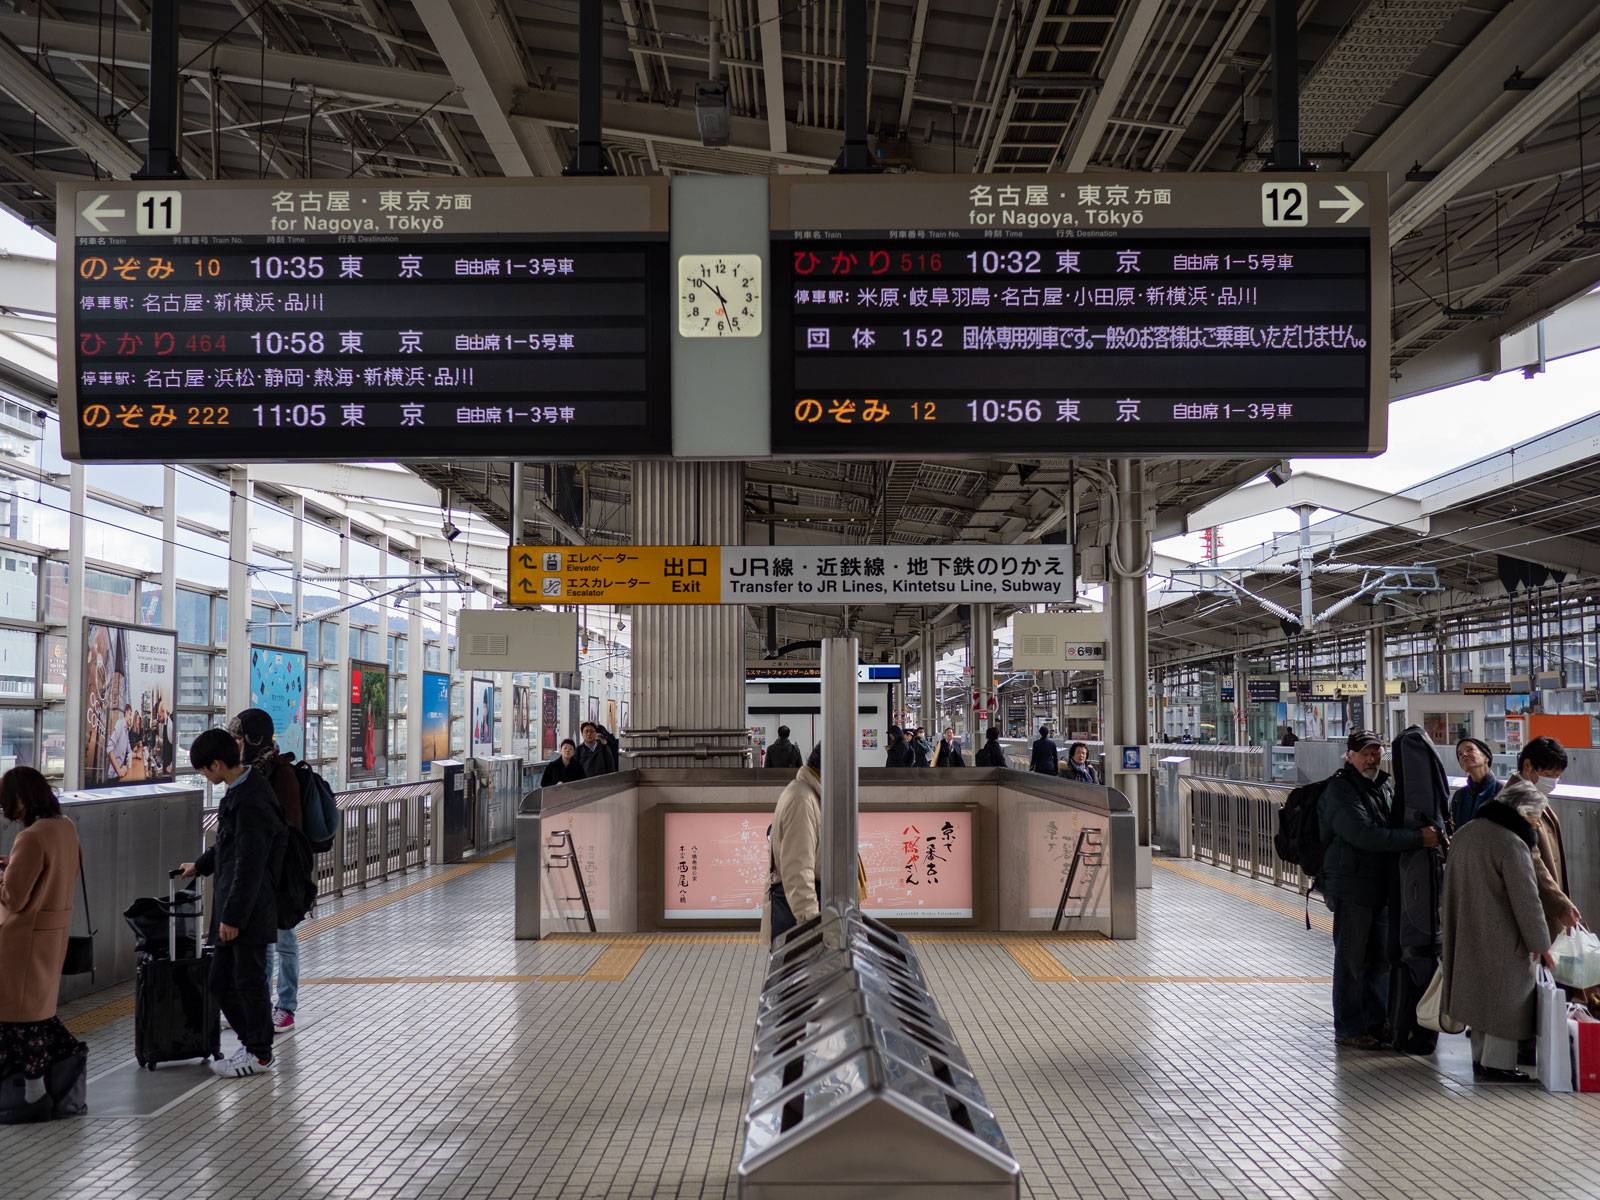 Shinkansen station platform